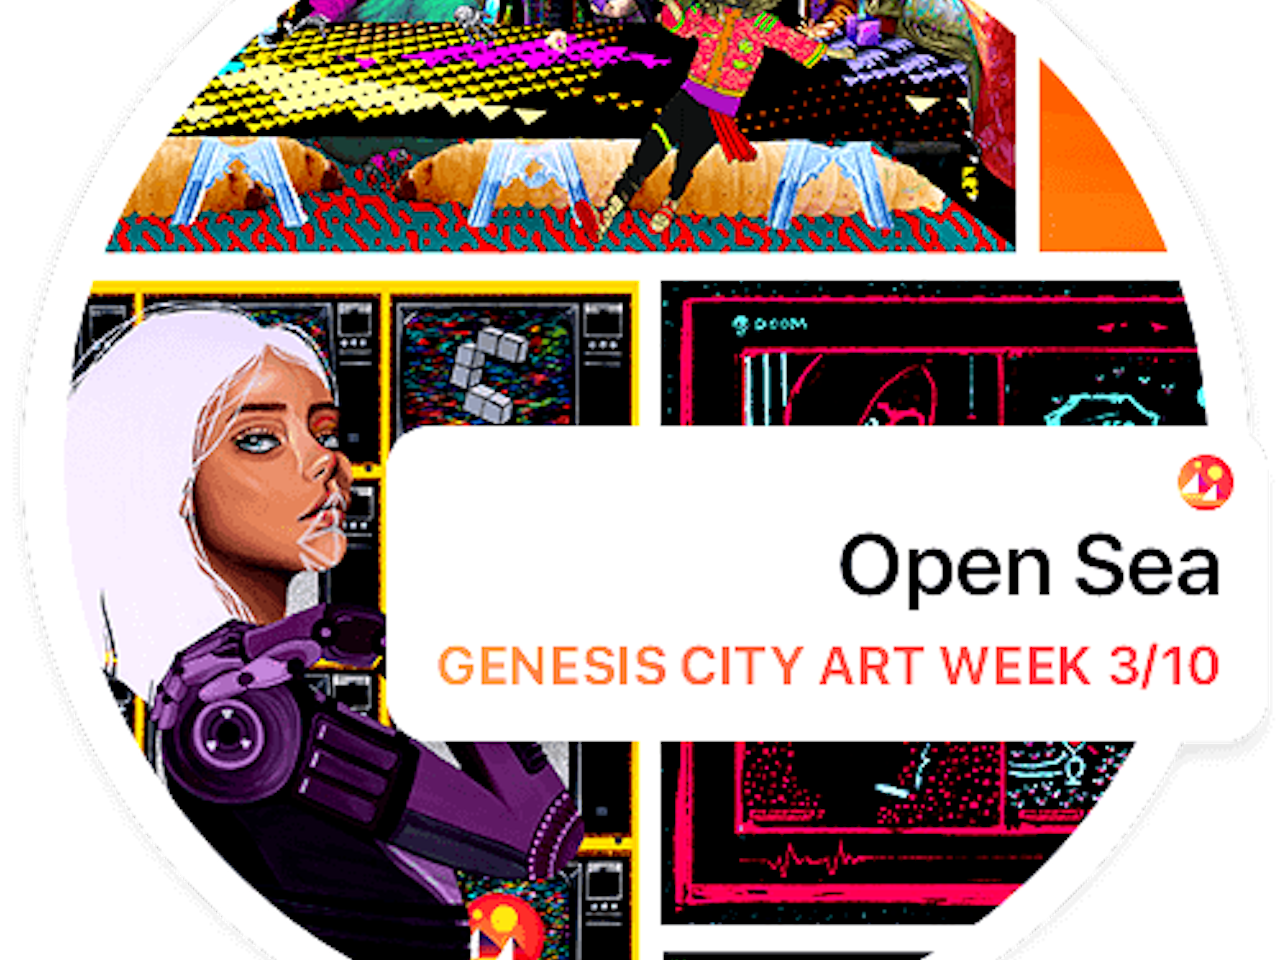 Decentraland - OpenSea Art Mall Launch